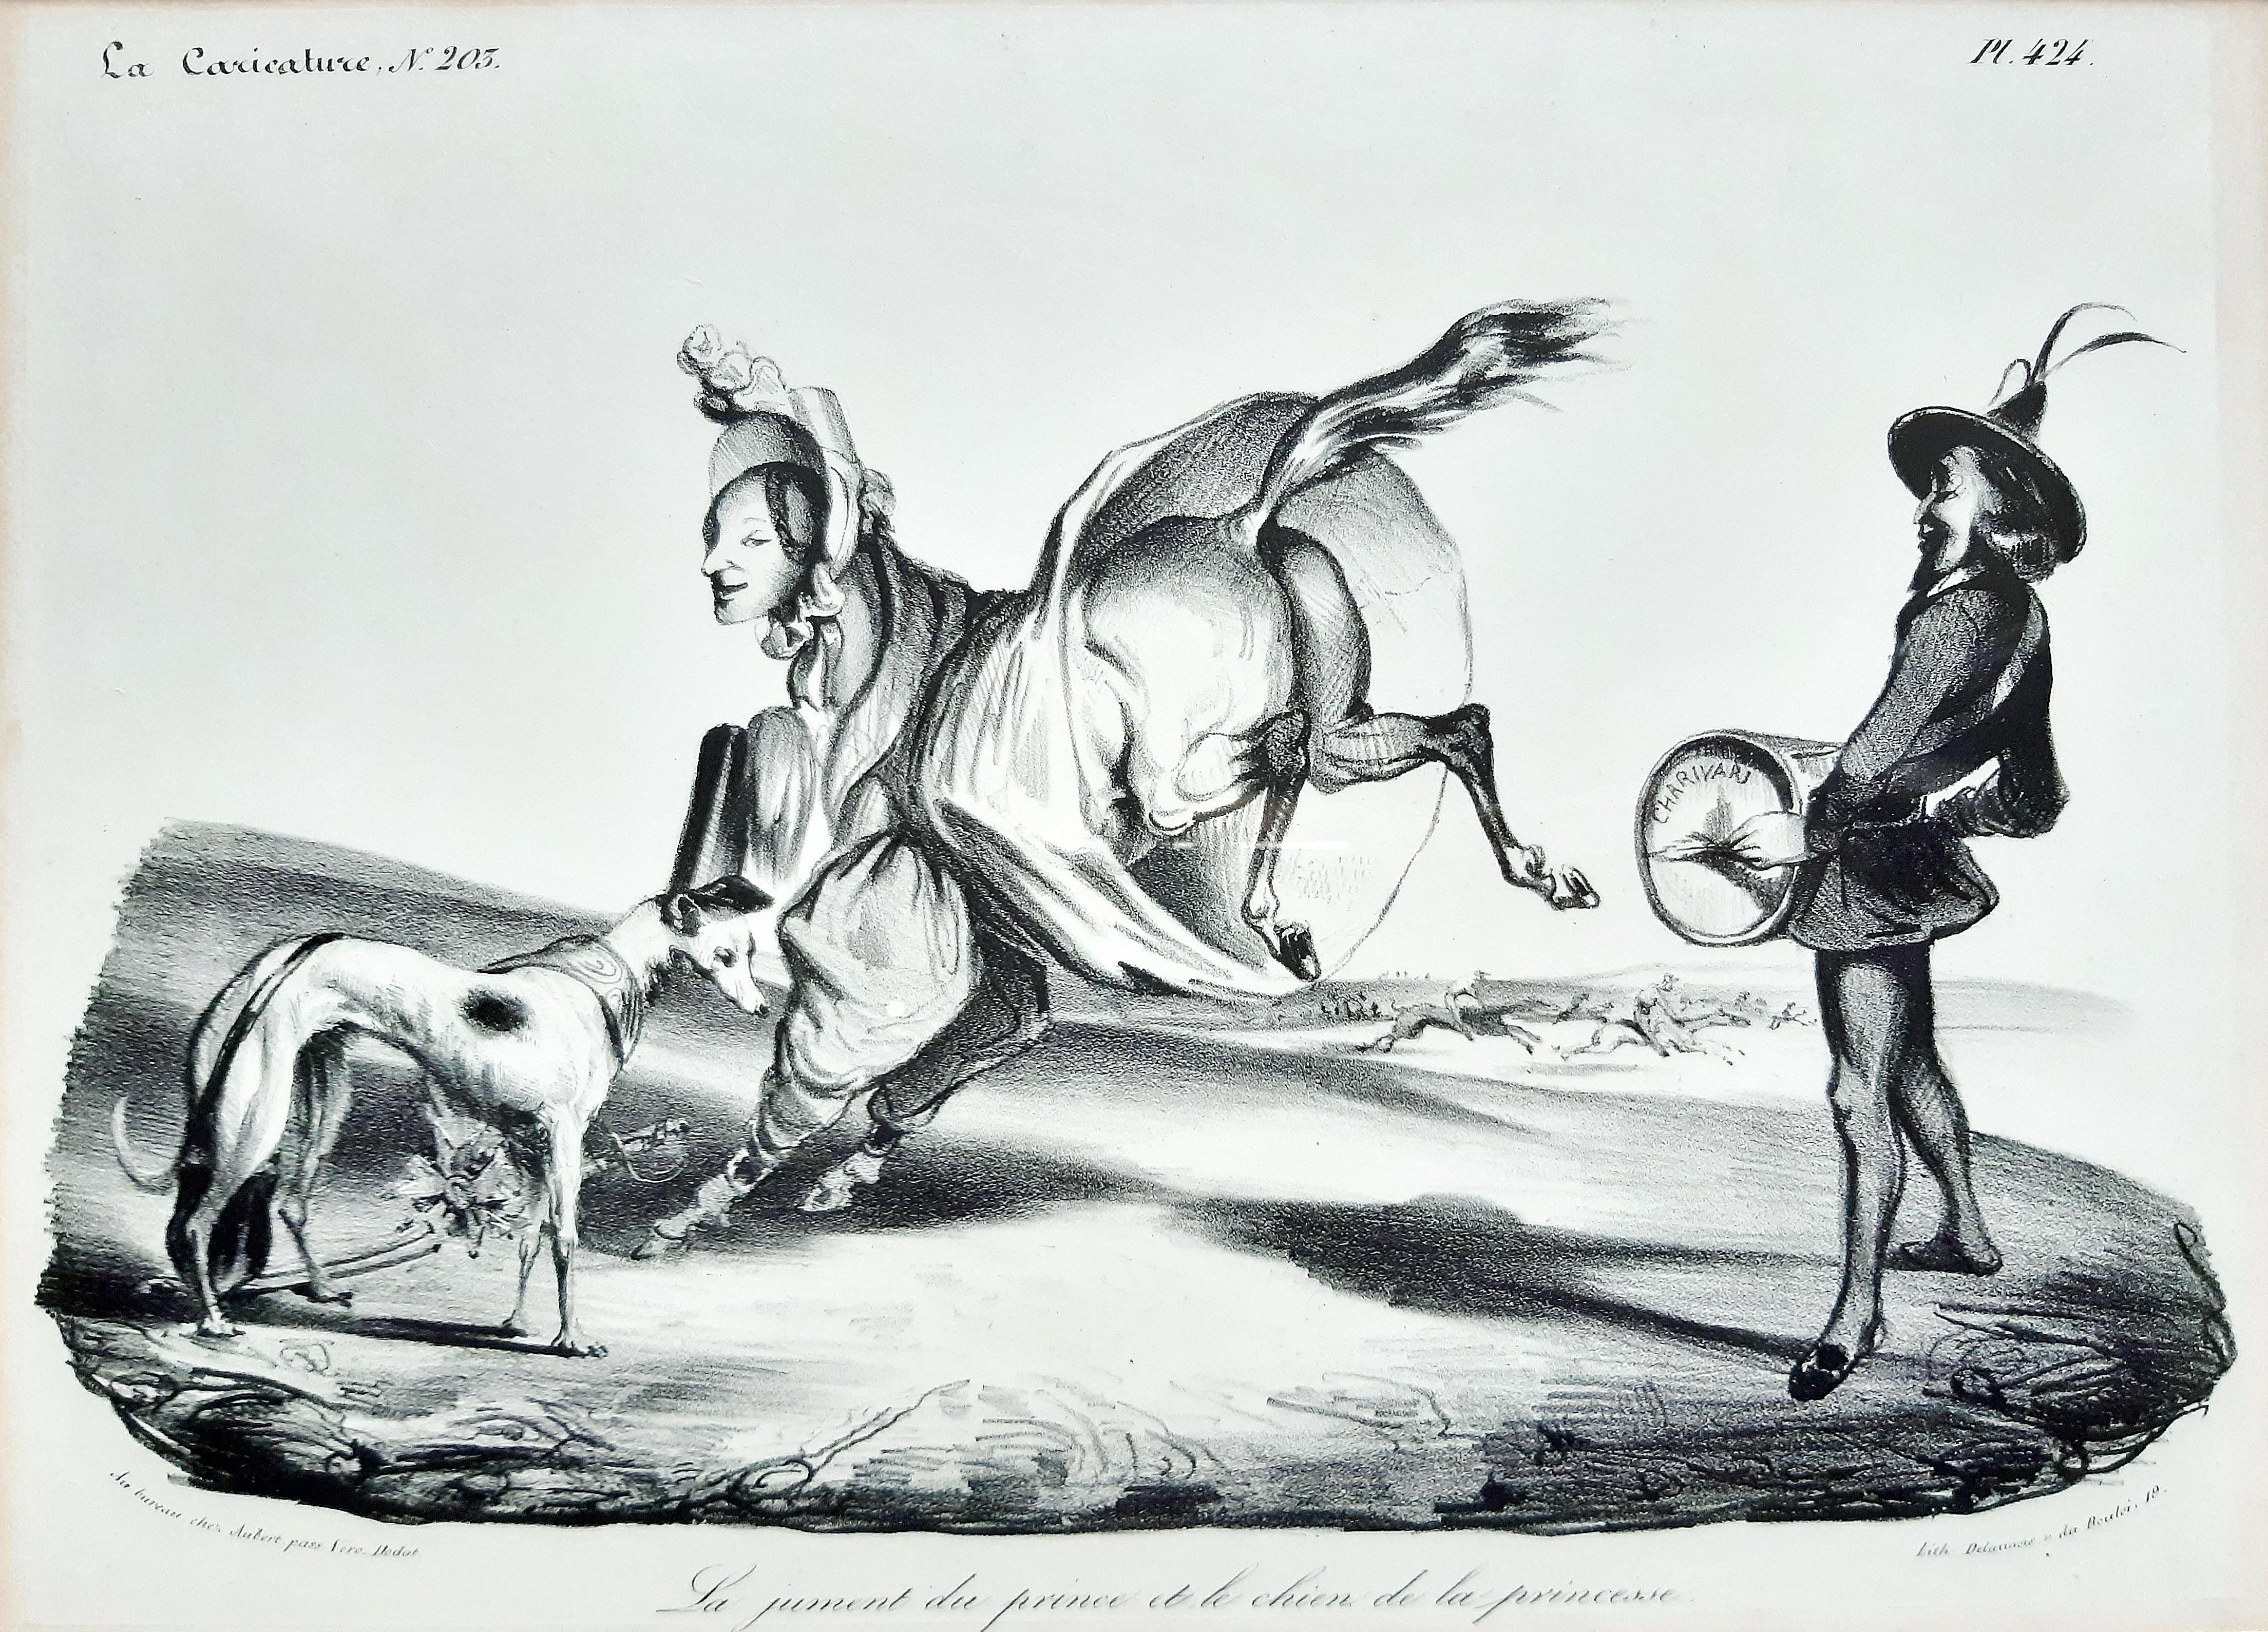 Honoré Daumier Figurative Print - La Jument du Prince et le chien de la Princesse- Lithograph by H. Daumier - 1834